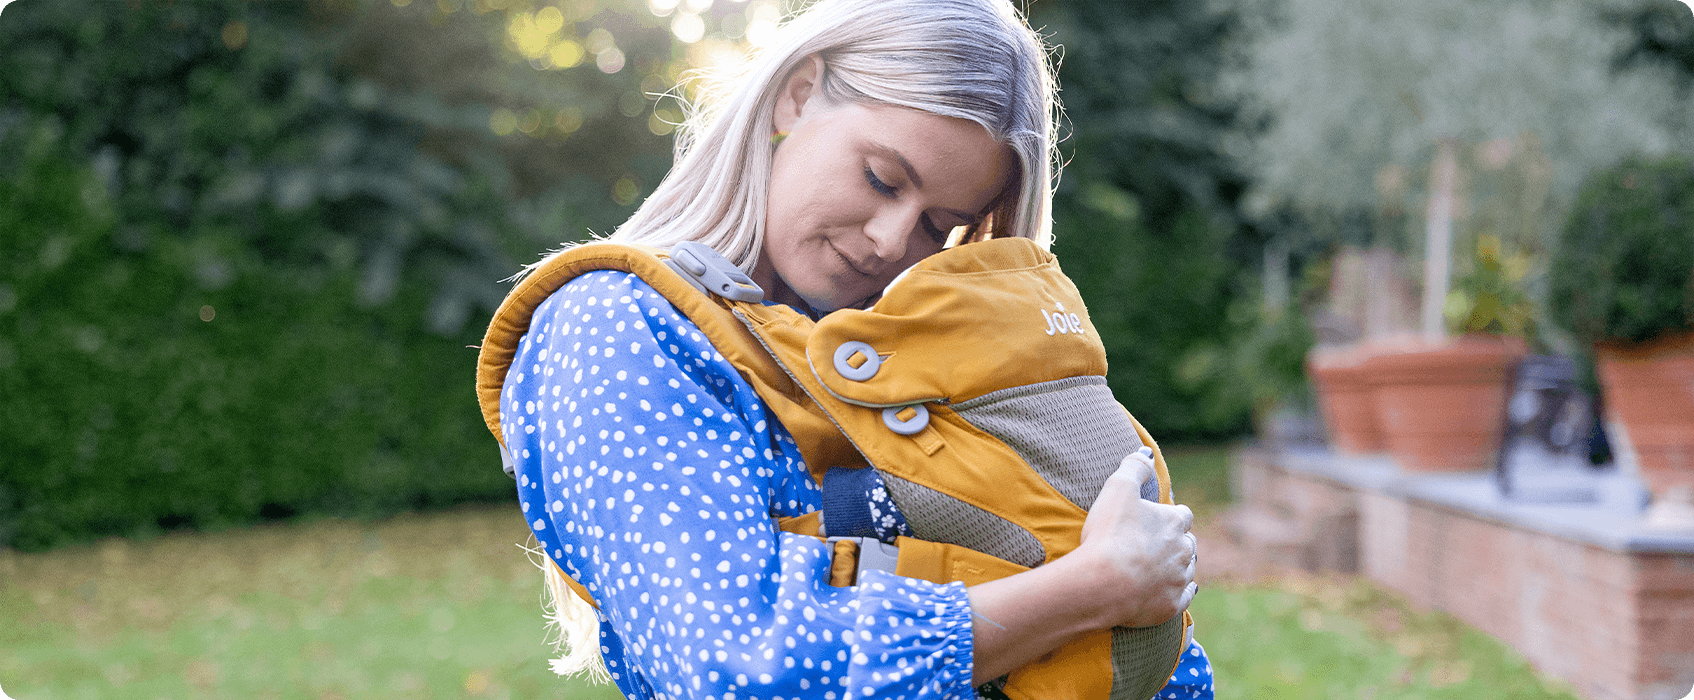 Mamá acurrucando a su bebé en un portabebés Joie Savvy amarillo mostaza